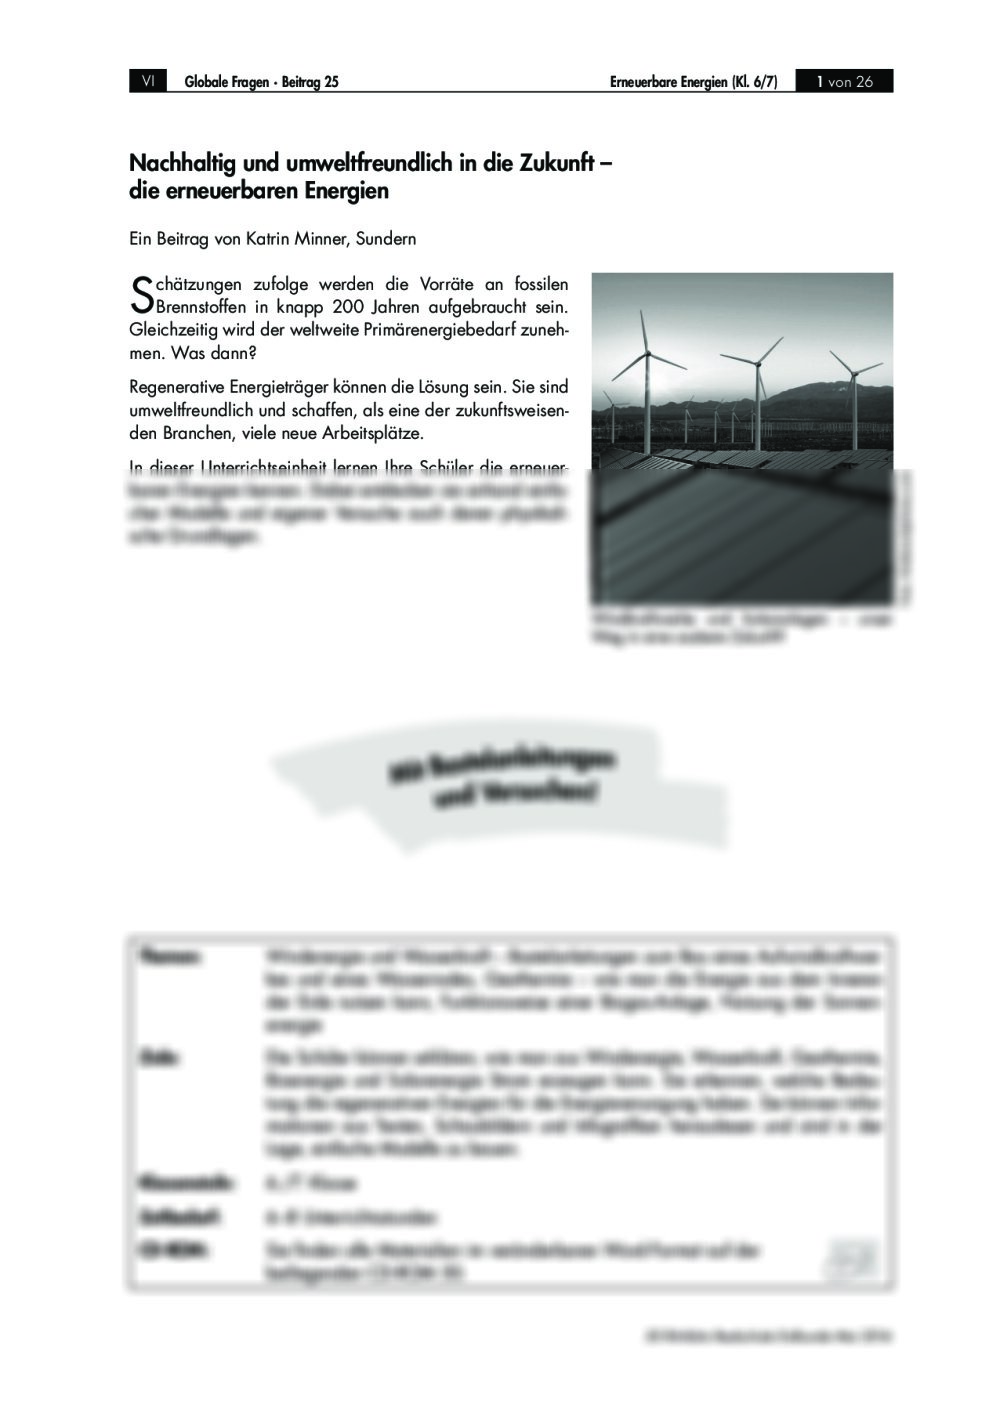 Die erneuerbaren Energien - Seite 1